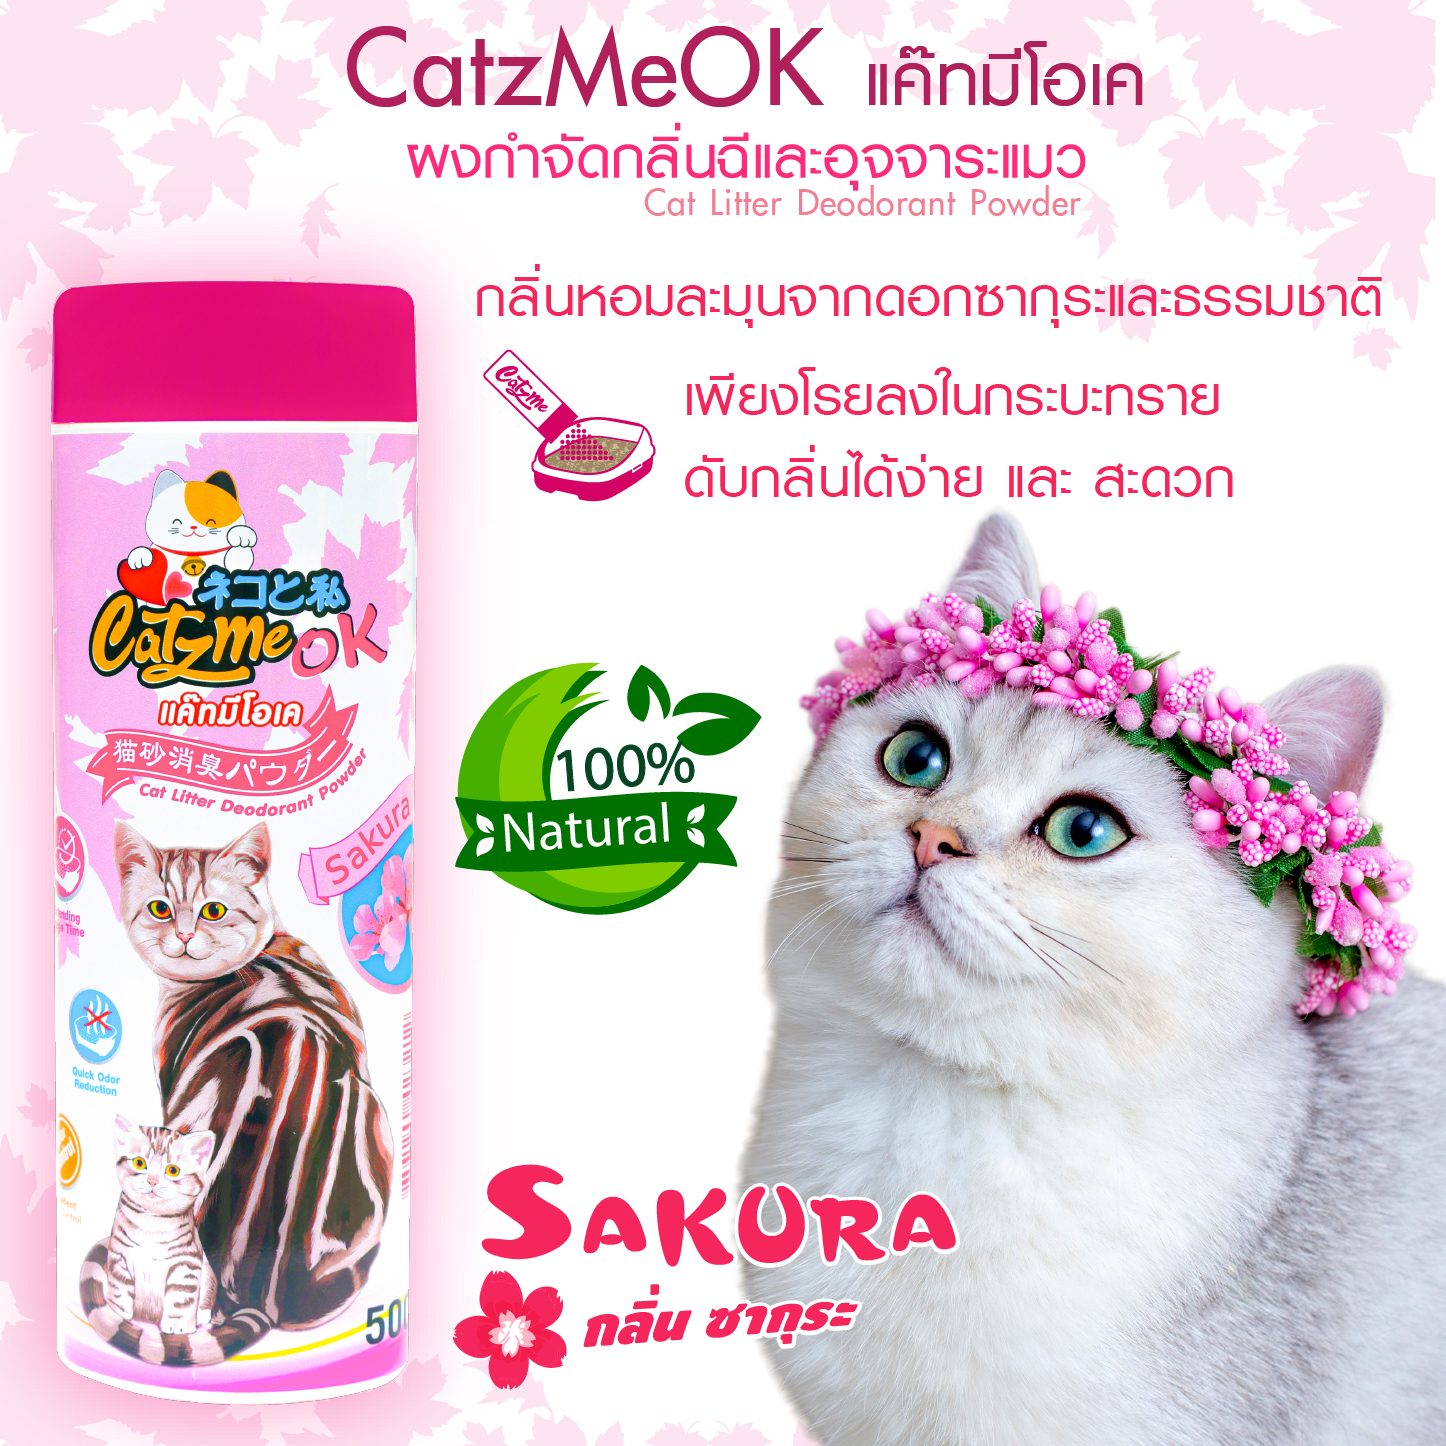 CatzMeOKแค๊ทมีโอเคผงดับกลิ่นทรายแมว(กลิ่นหอมซากุระ)กำจัดกลิ่นฉี่แมวอึแมวใช้โรยกระบะทรายแมวห้องน้ำแมวดับกลิ่นเห็นผลทันที่ใช้ขนาด500กรัม